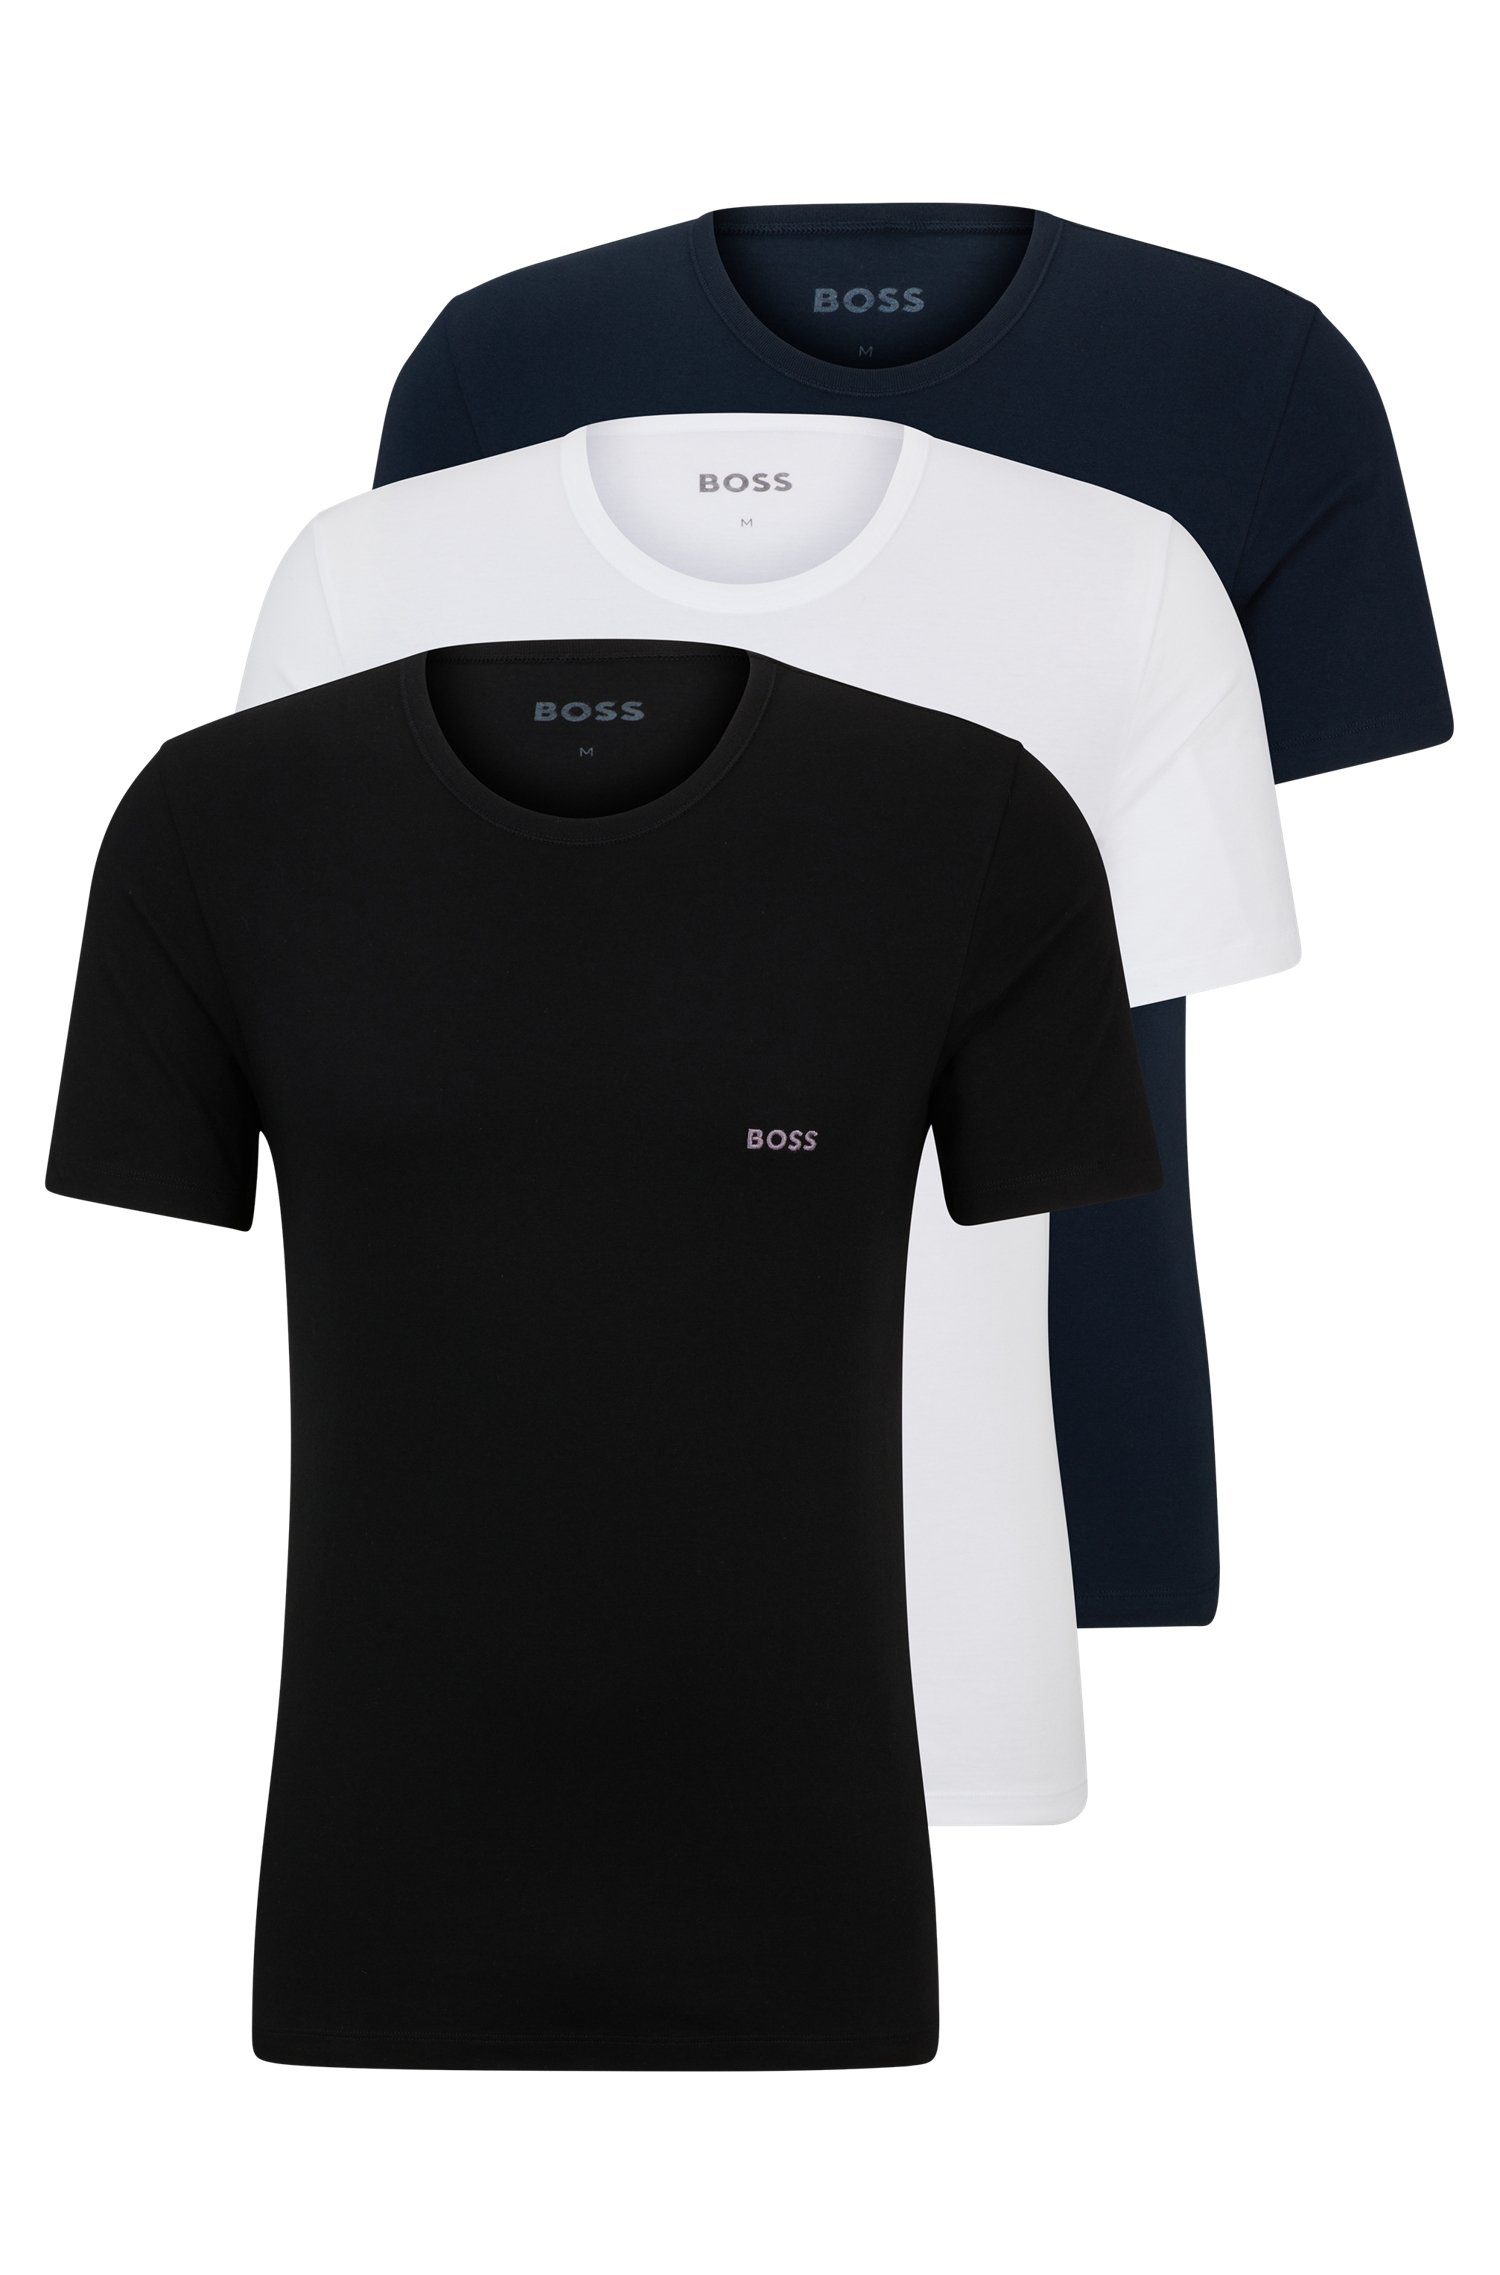 BOSS T-Shirt (Set, 3-tlg) mit BOSS Schriftzug auf der Brust schwarz/dunkelblau/weiß982